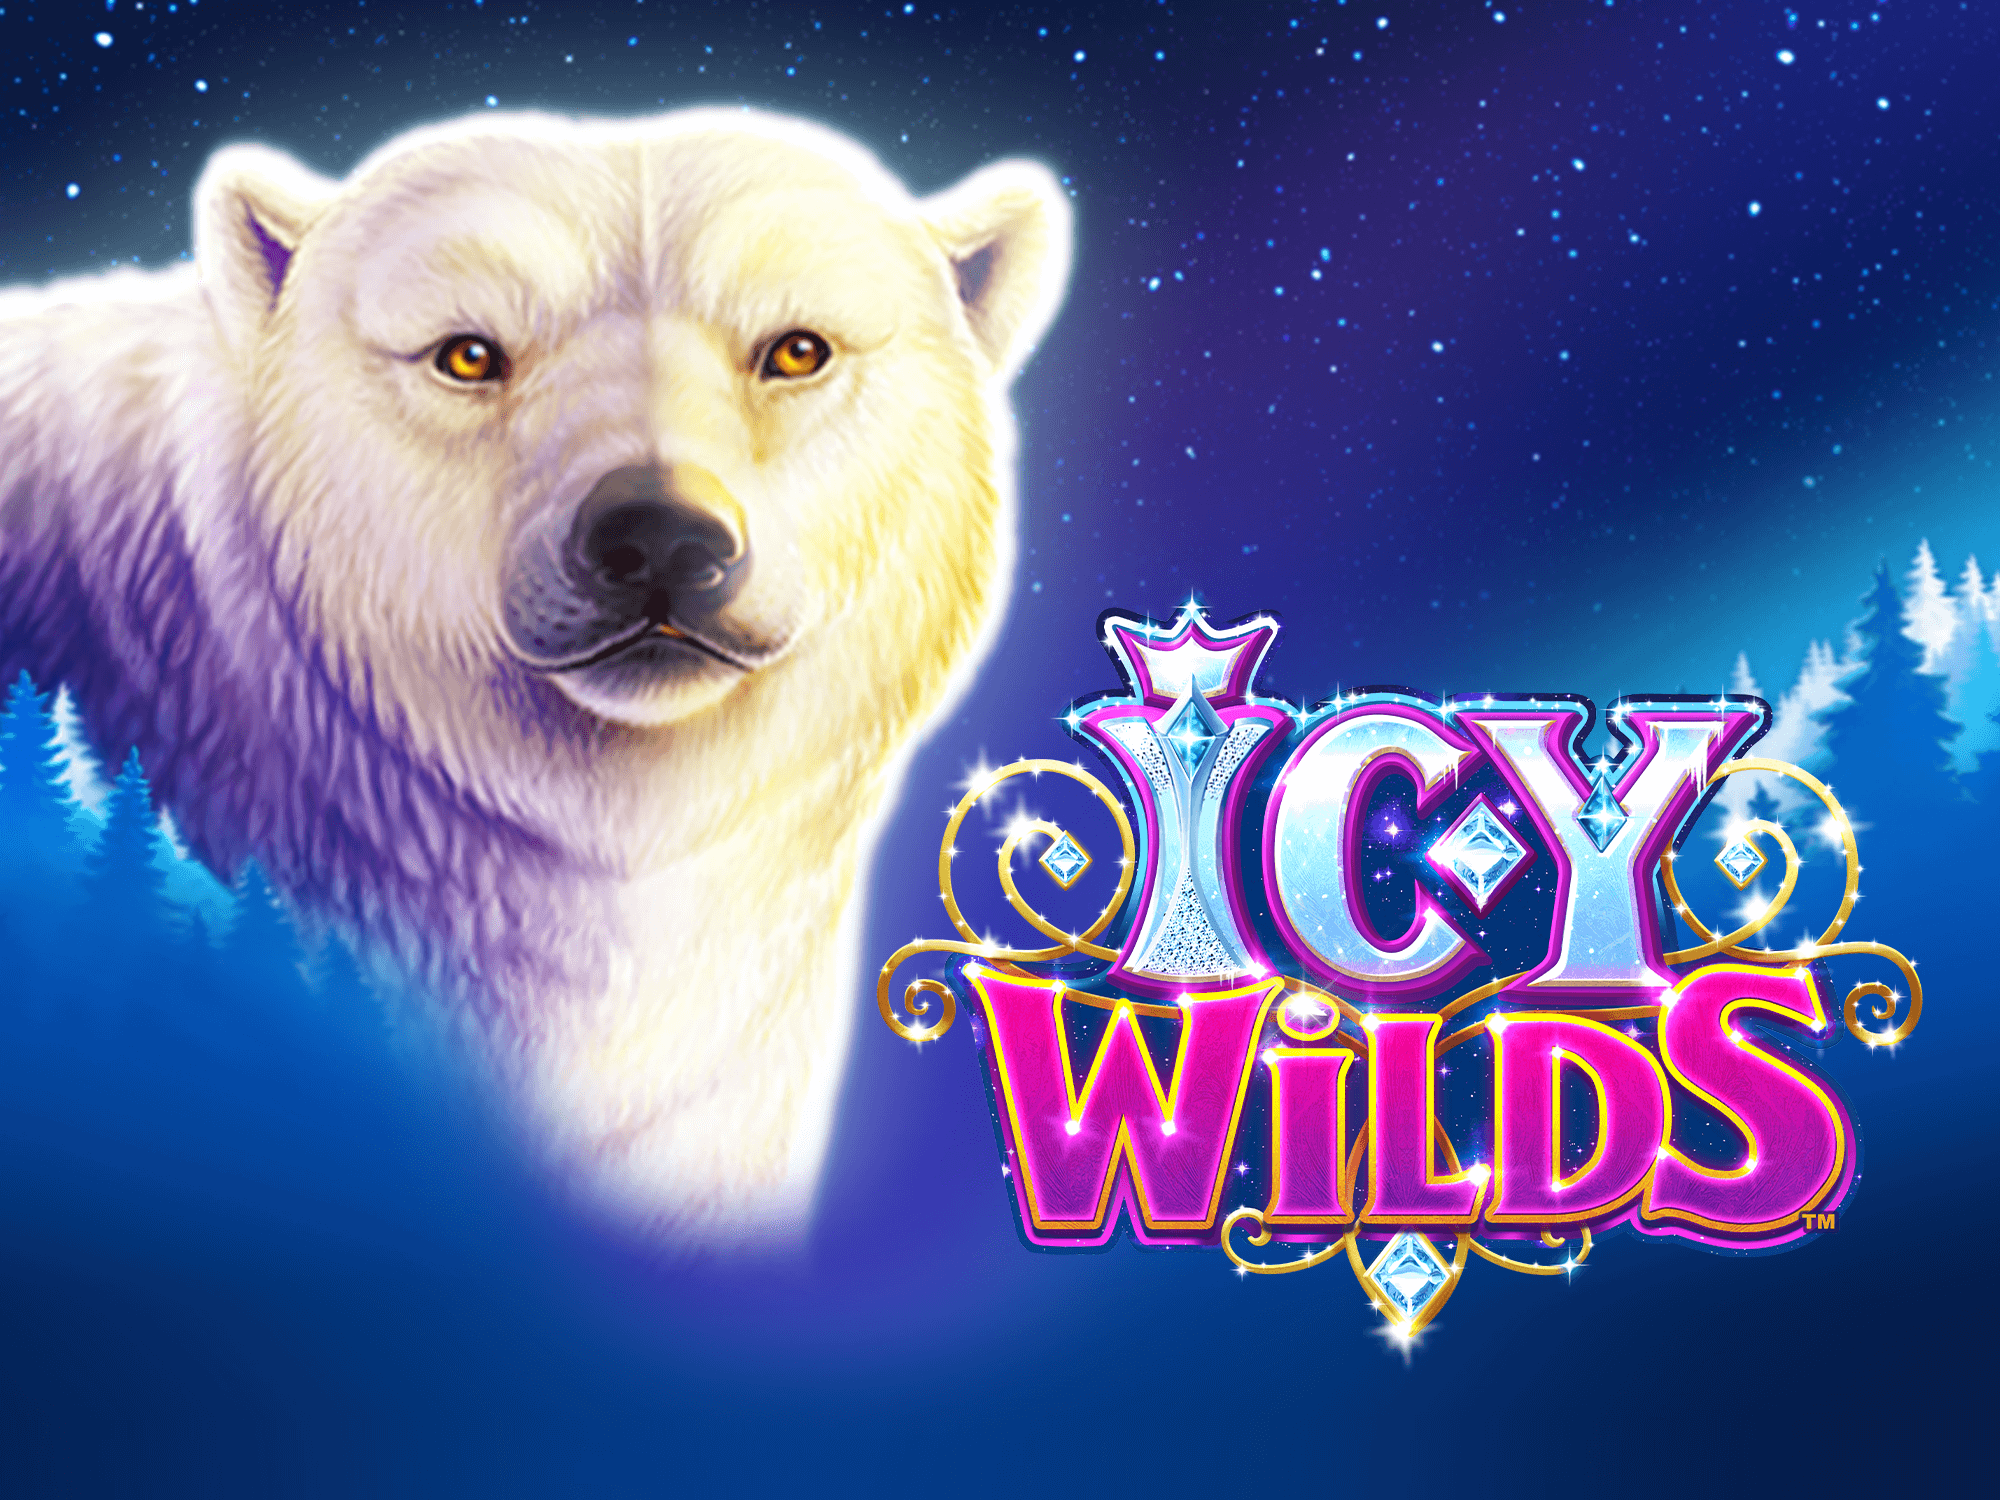 Icy wilds slot machine free play